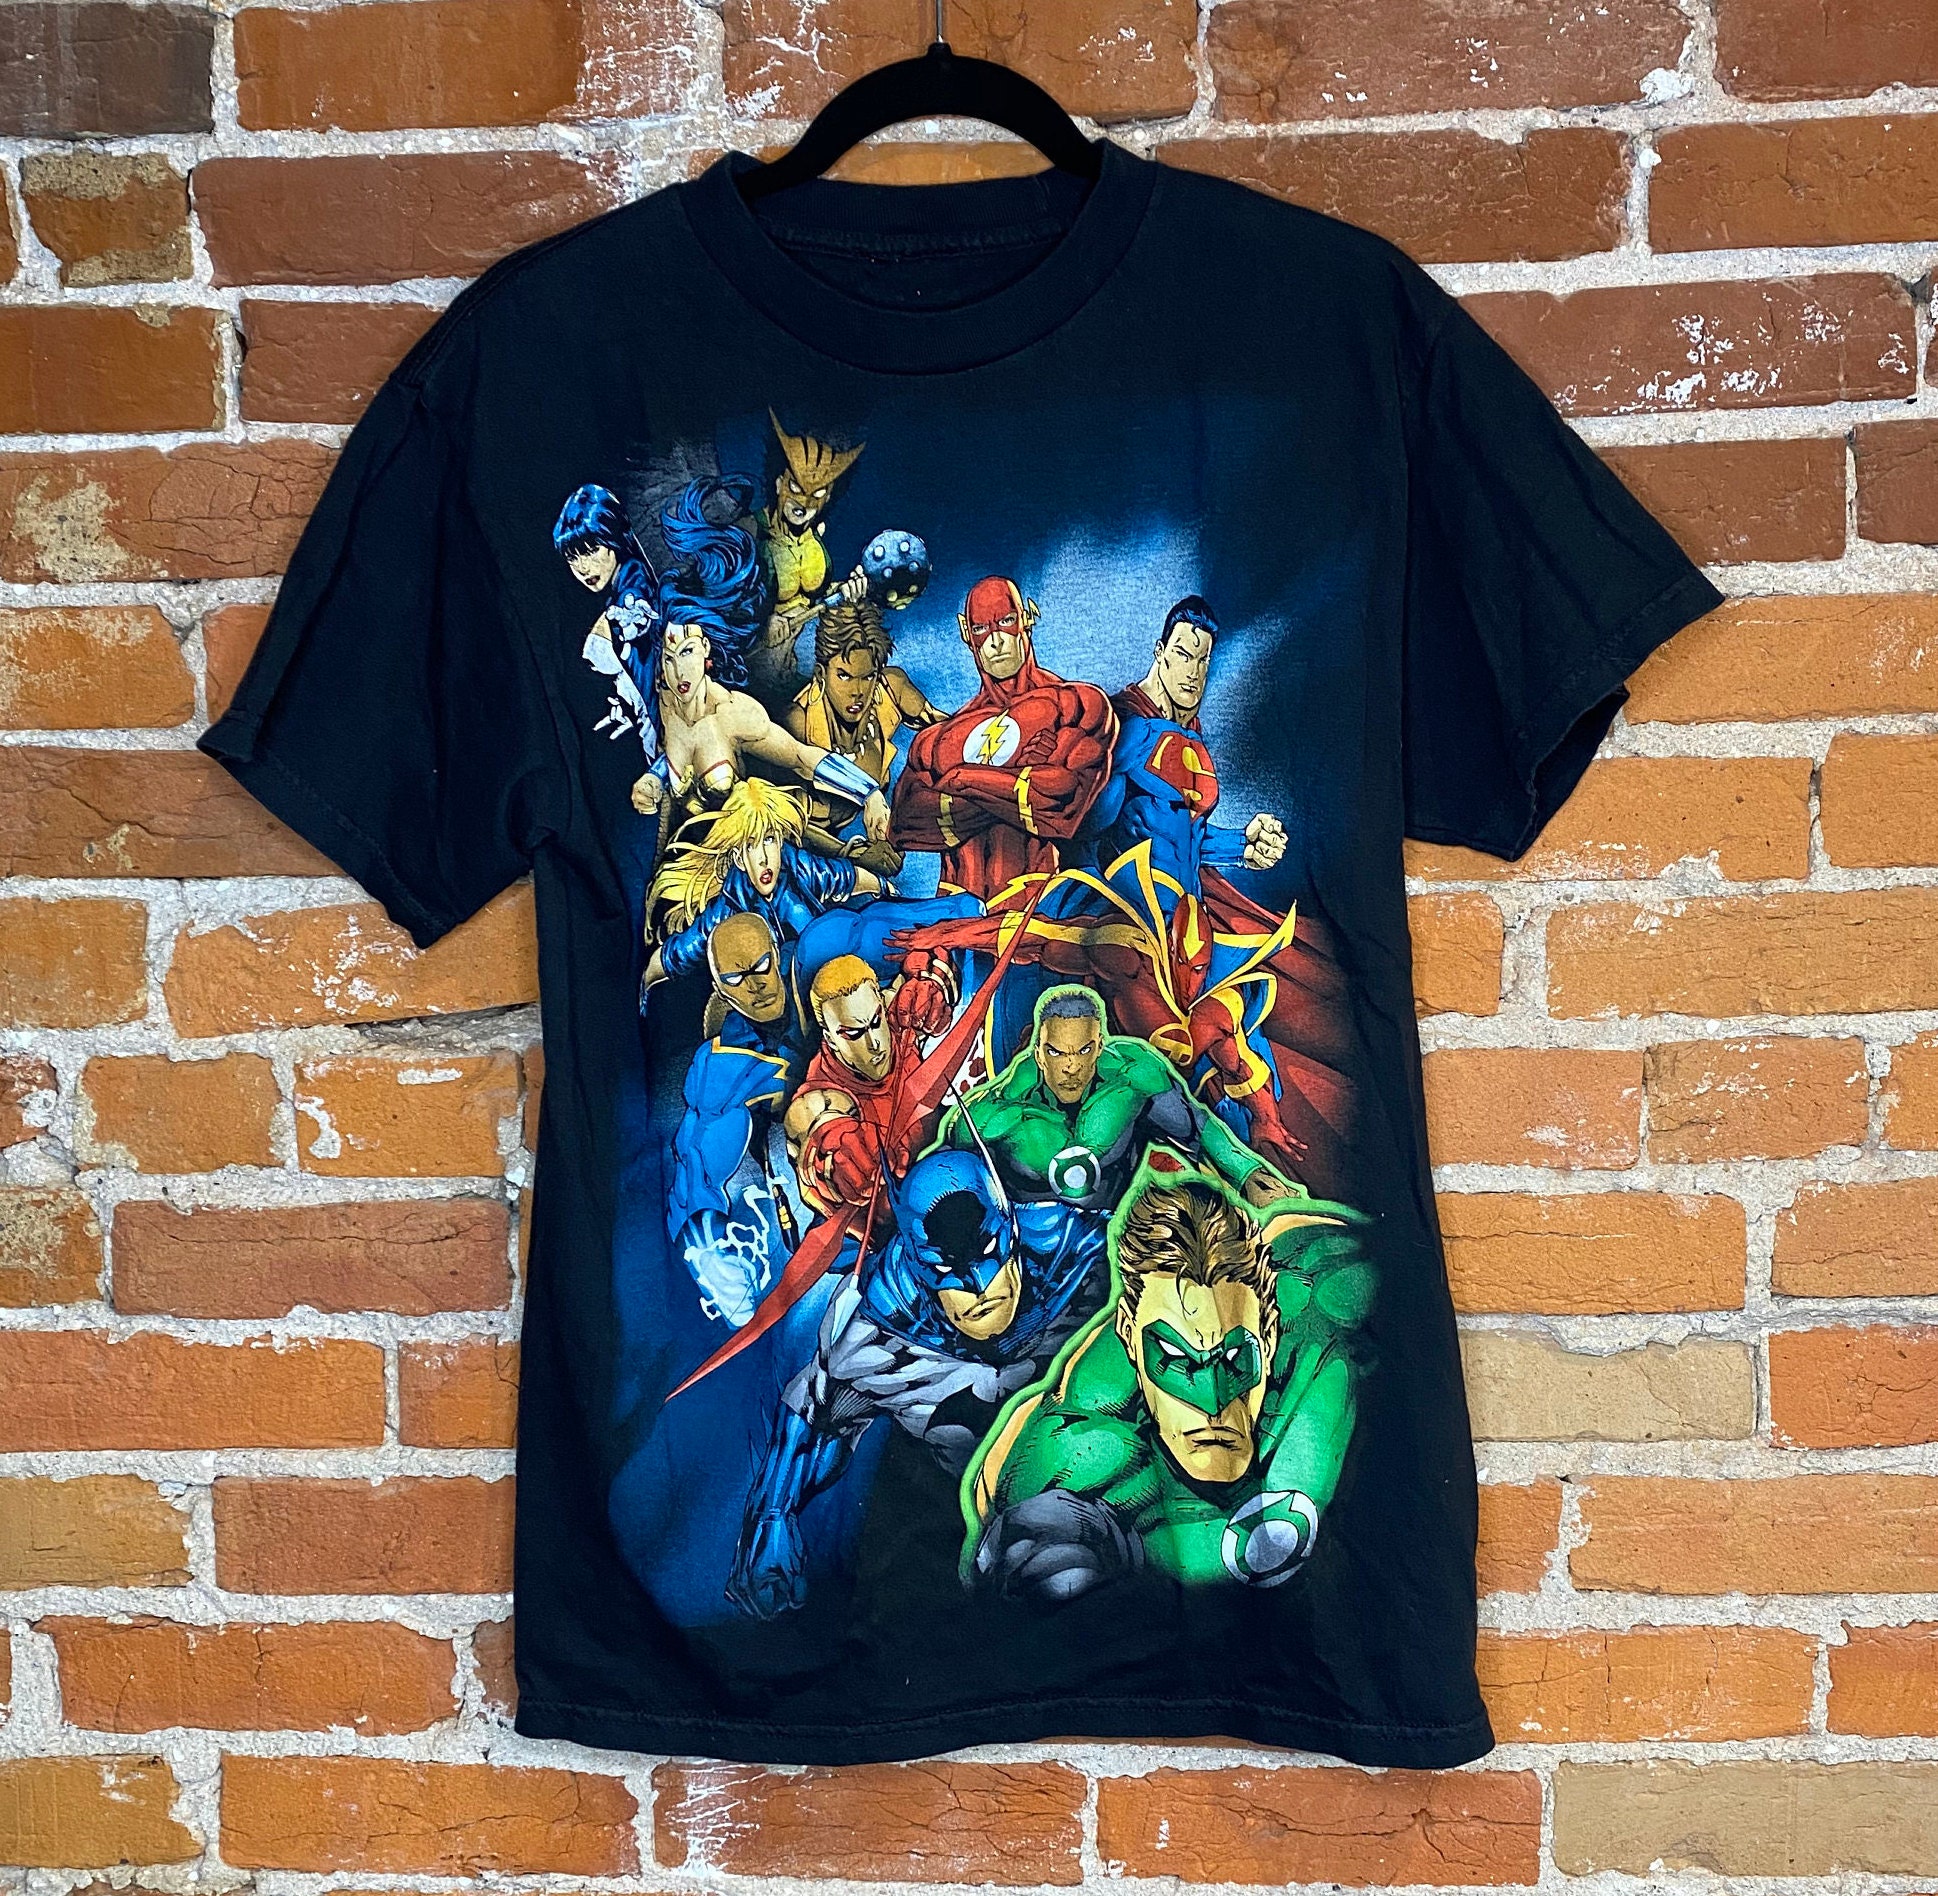 Vintage DC Comics Tshirt - Etsy